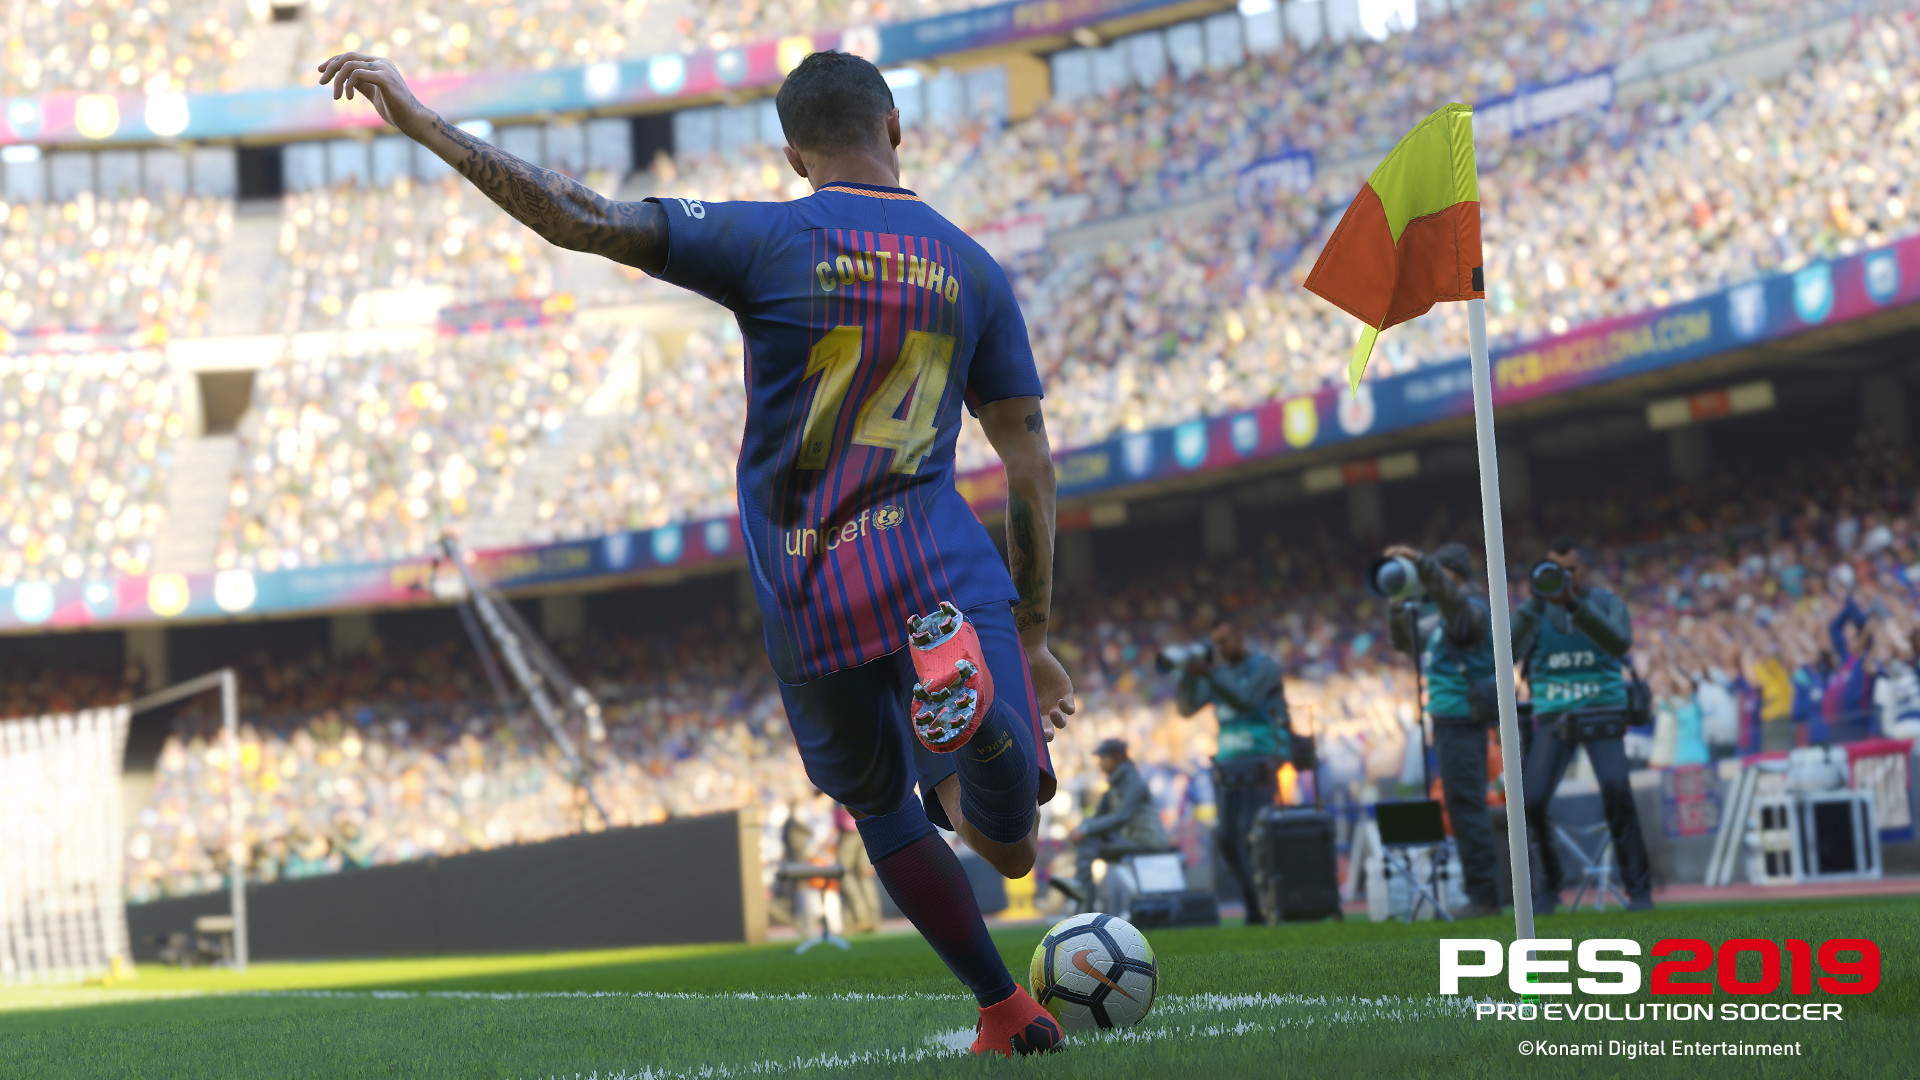 pro evolution soccer 2019 review pcgamer